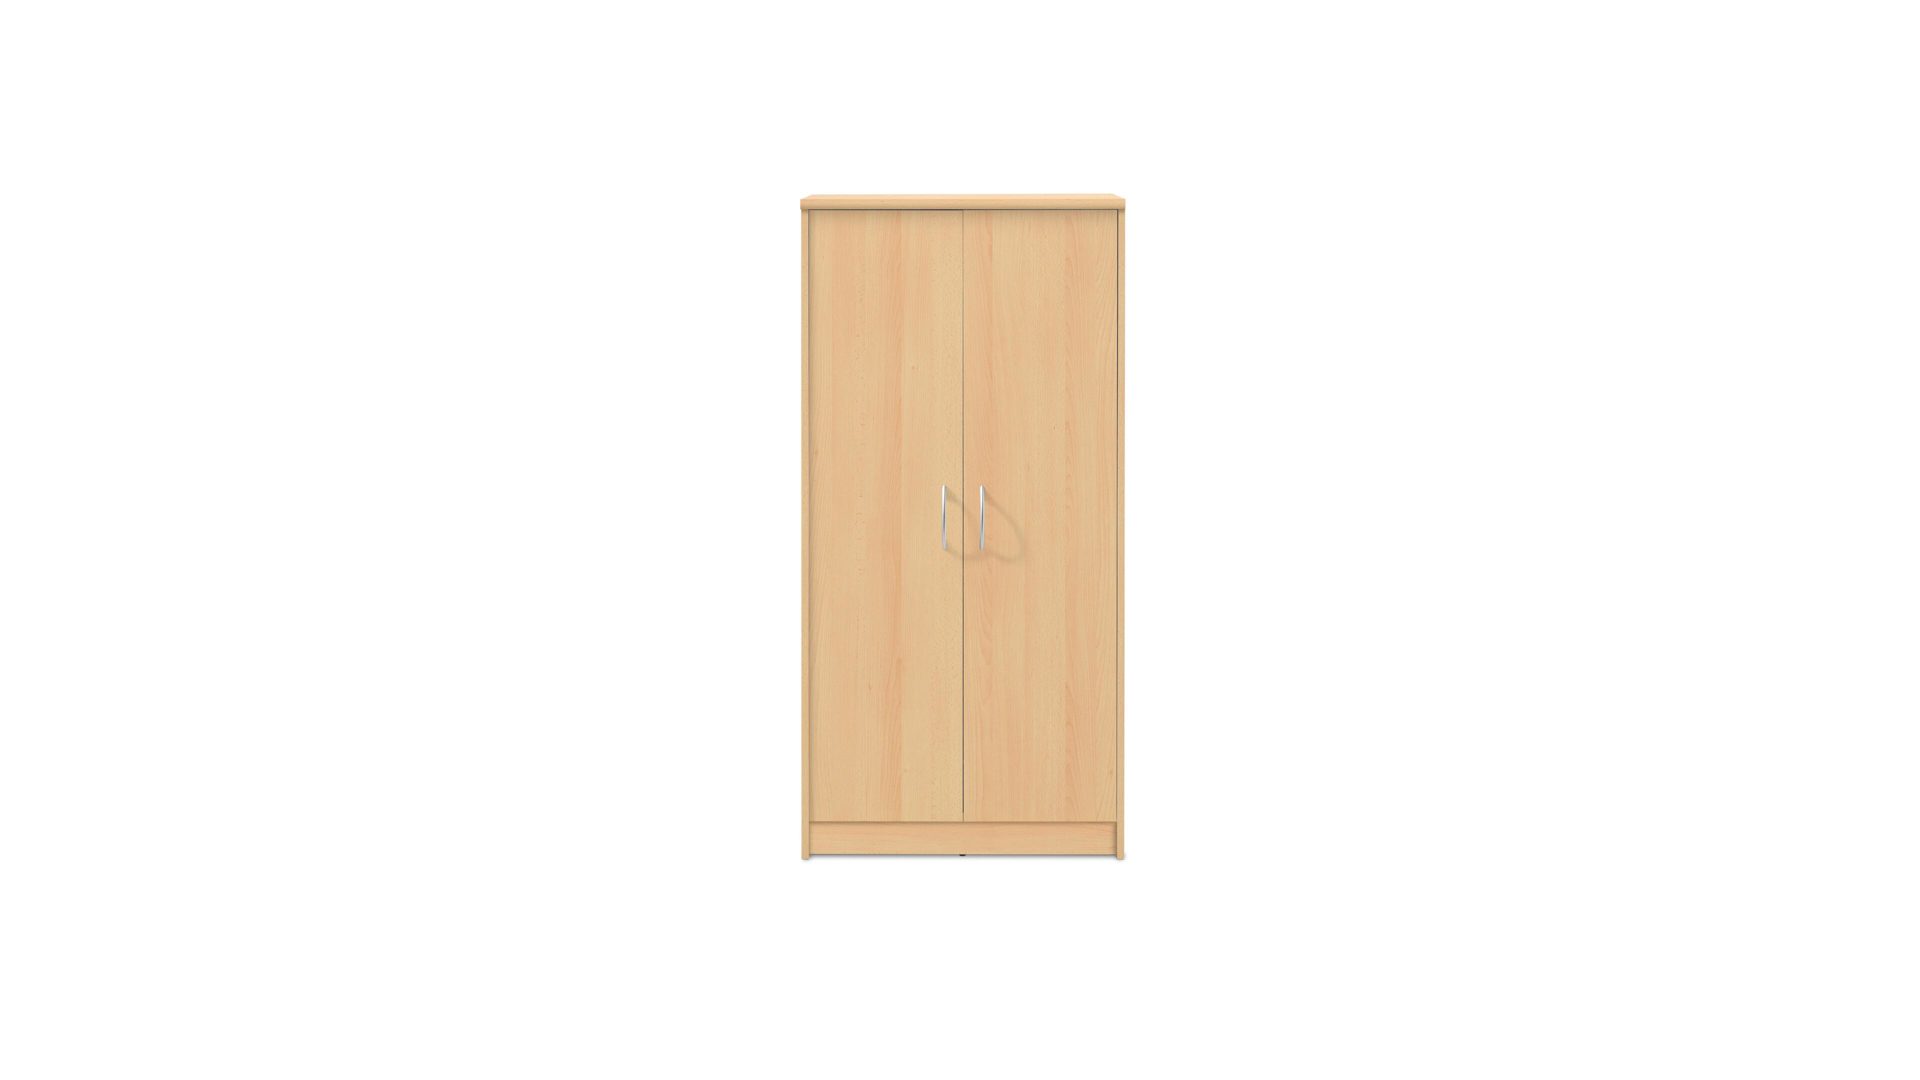 Aktenschrank Bega consult aus Holz in Holzfarben Aktenschrank buchefarbene Kunststoffoberflächen – zwei Türen, Höhe ca. 148 cm